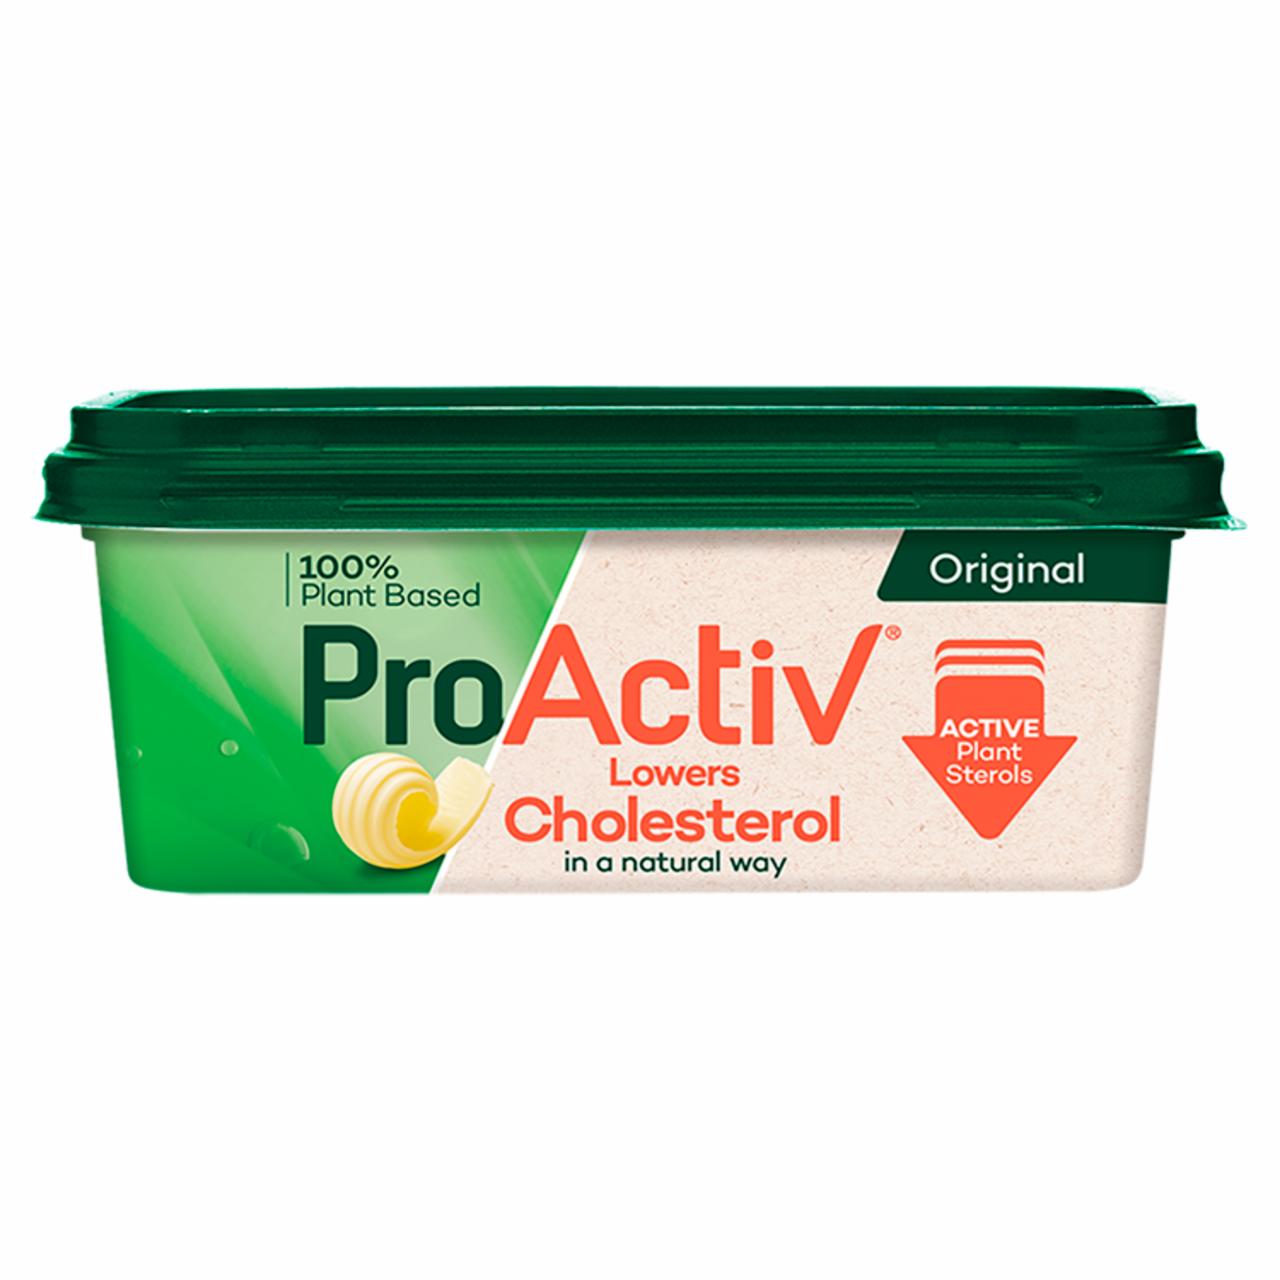 Képek - ProActiv 35% zsírtartalmú margarin hozzáadott növényi szterinnel 250 g